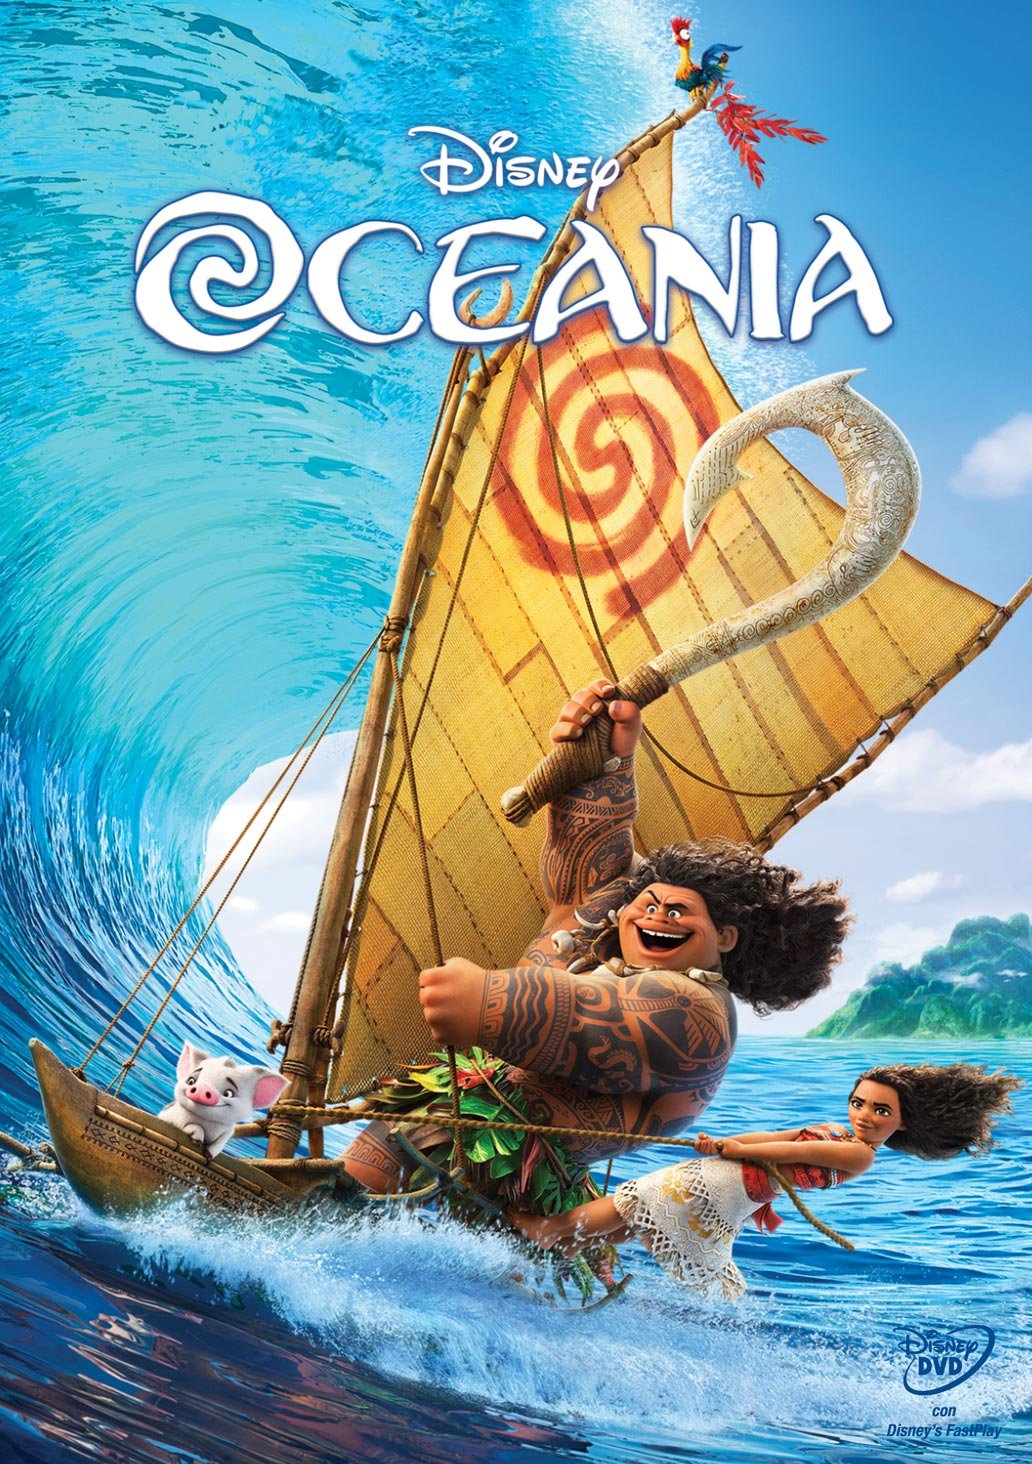 Oceania (DVD)